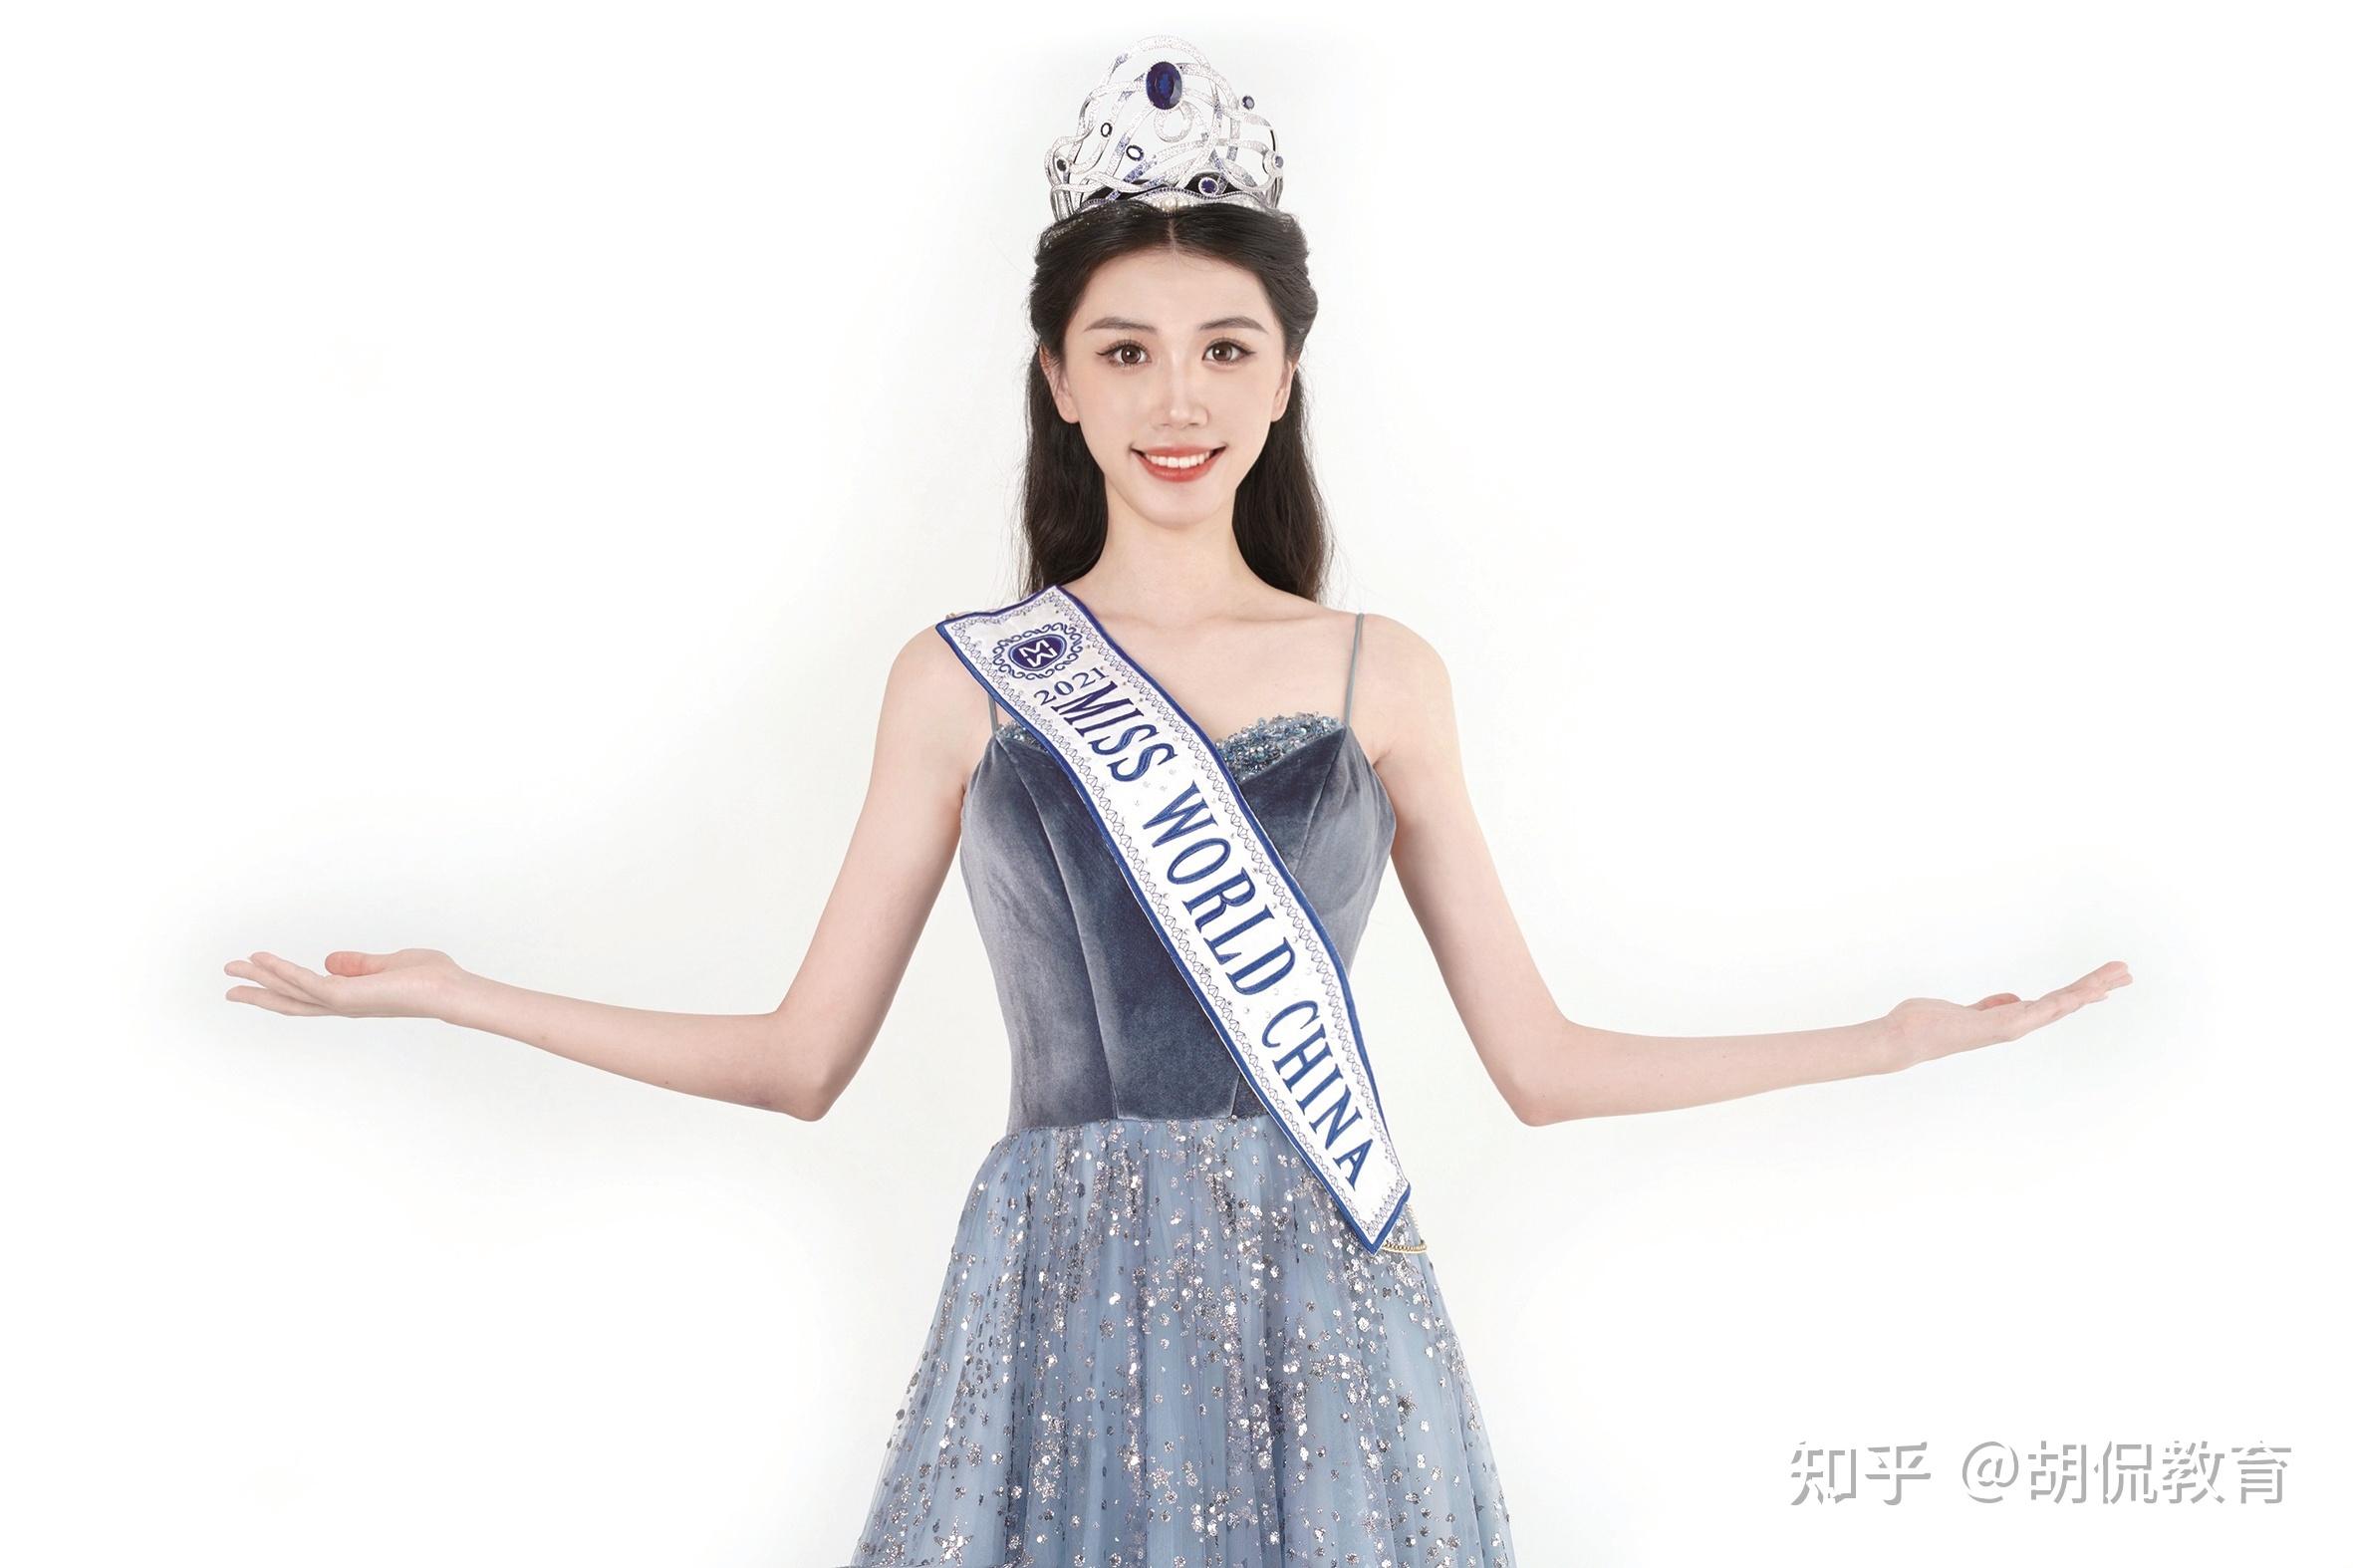 世界小姐中国冠军姜思岐毕业于华中师大网友这颜值气质爱了